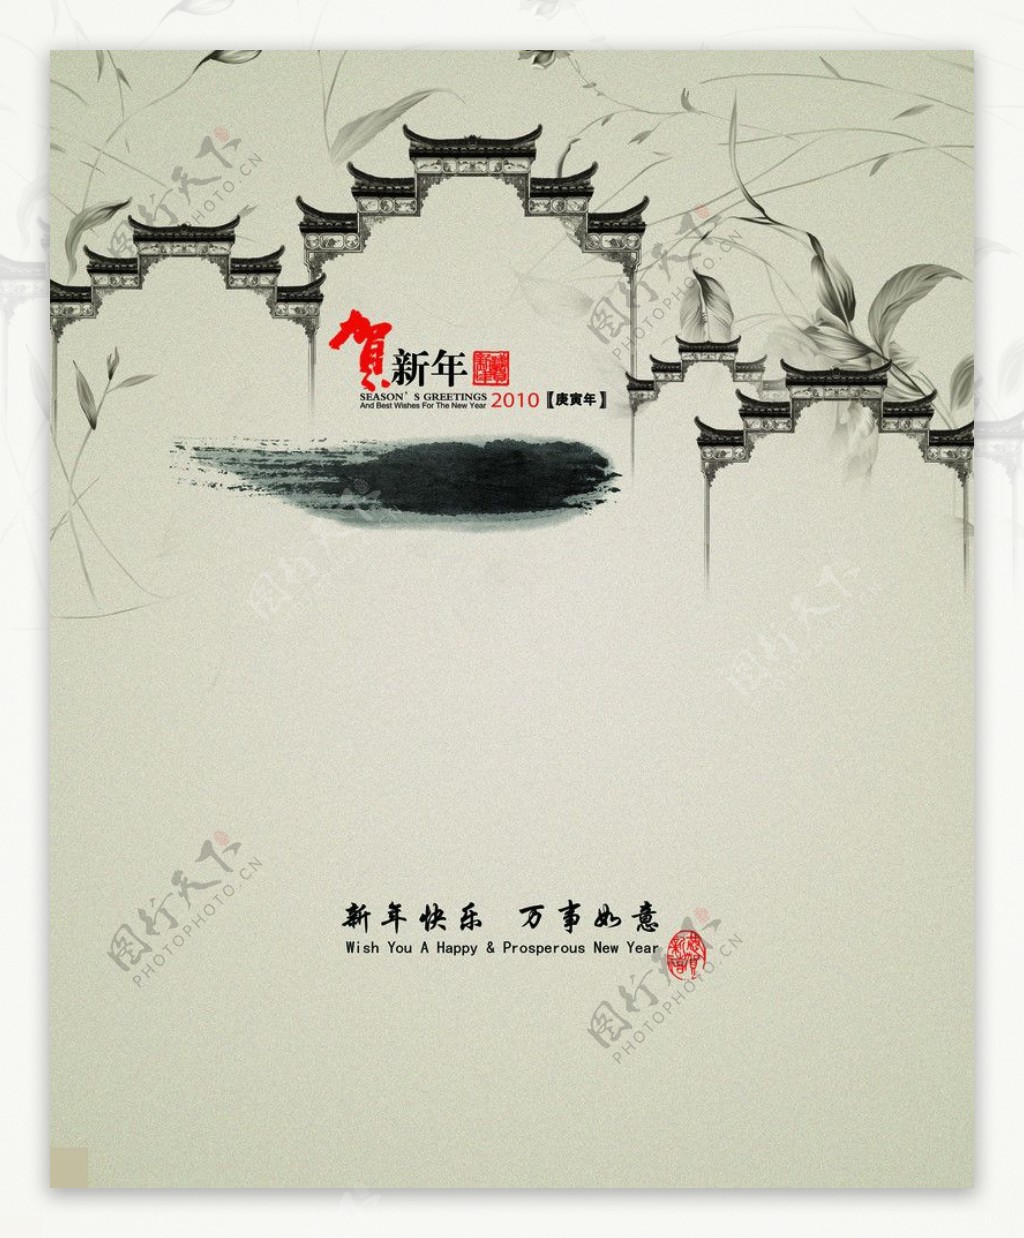 保险公司新年贺卡2010春节水墨中国风祝贺古典传统节日素材PSD分层素材图片